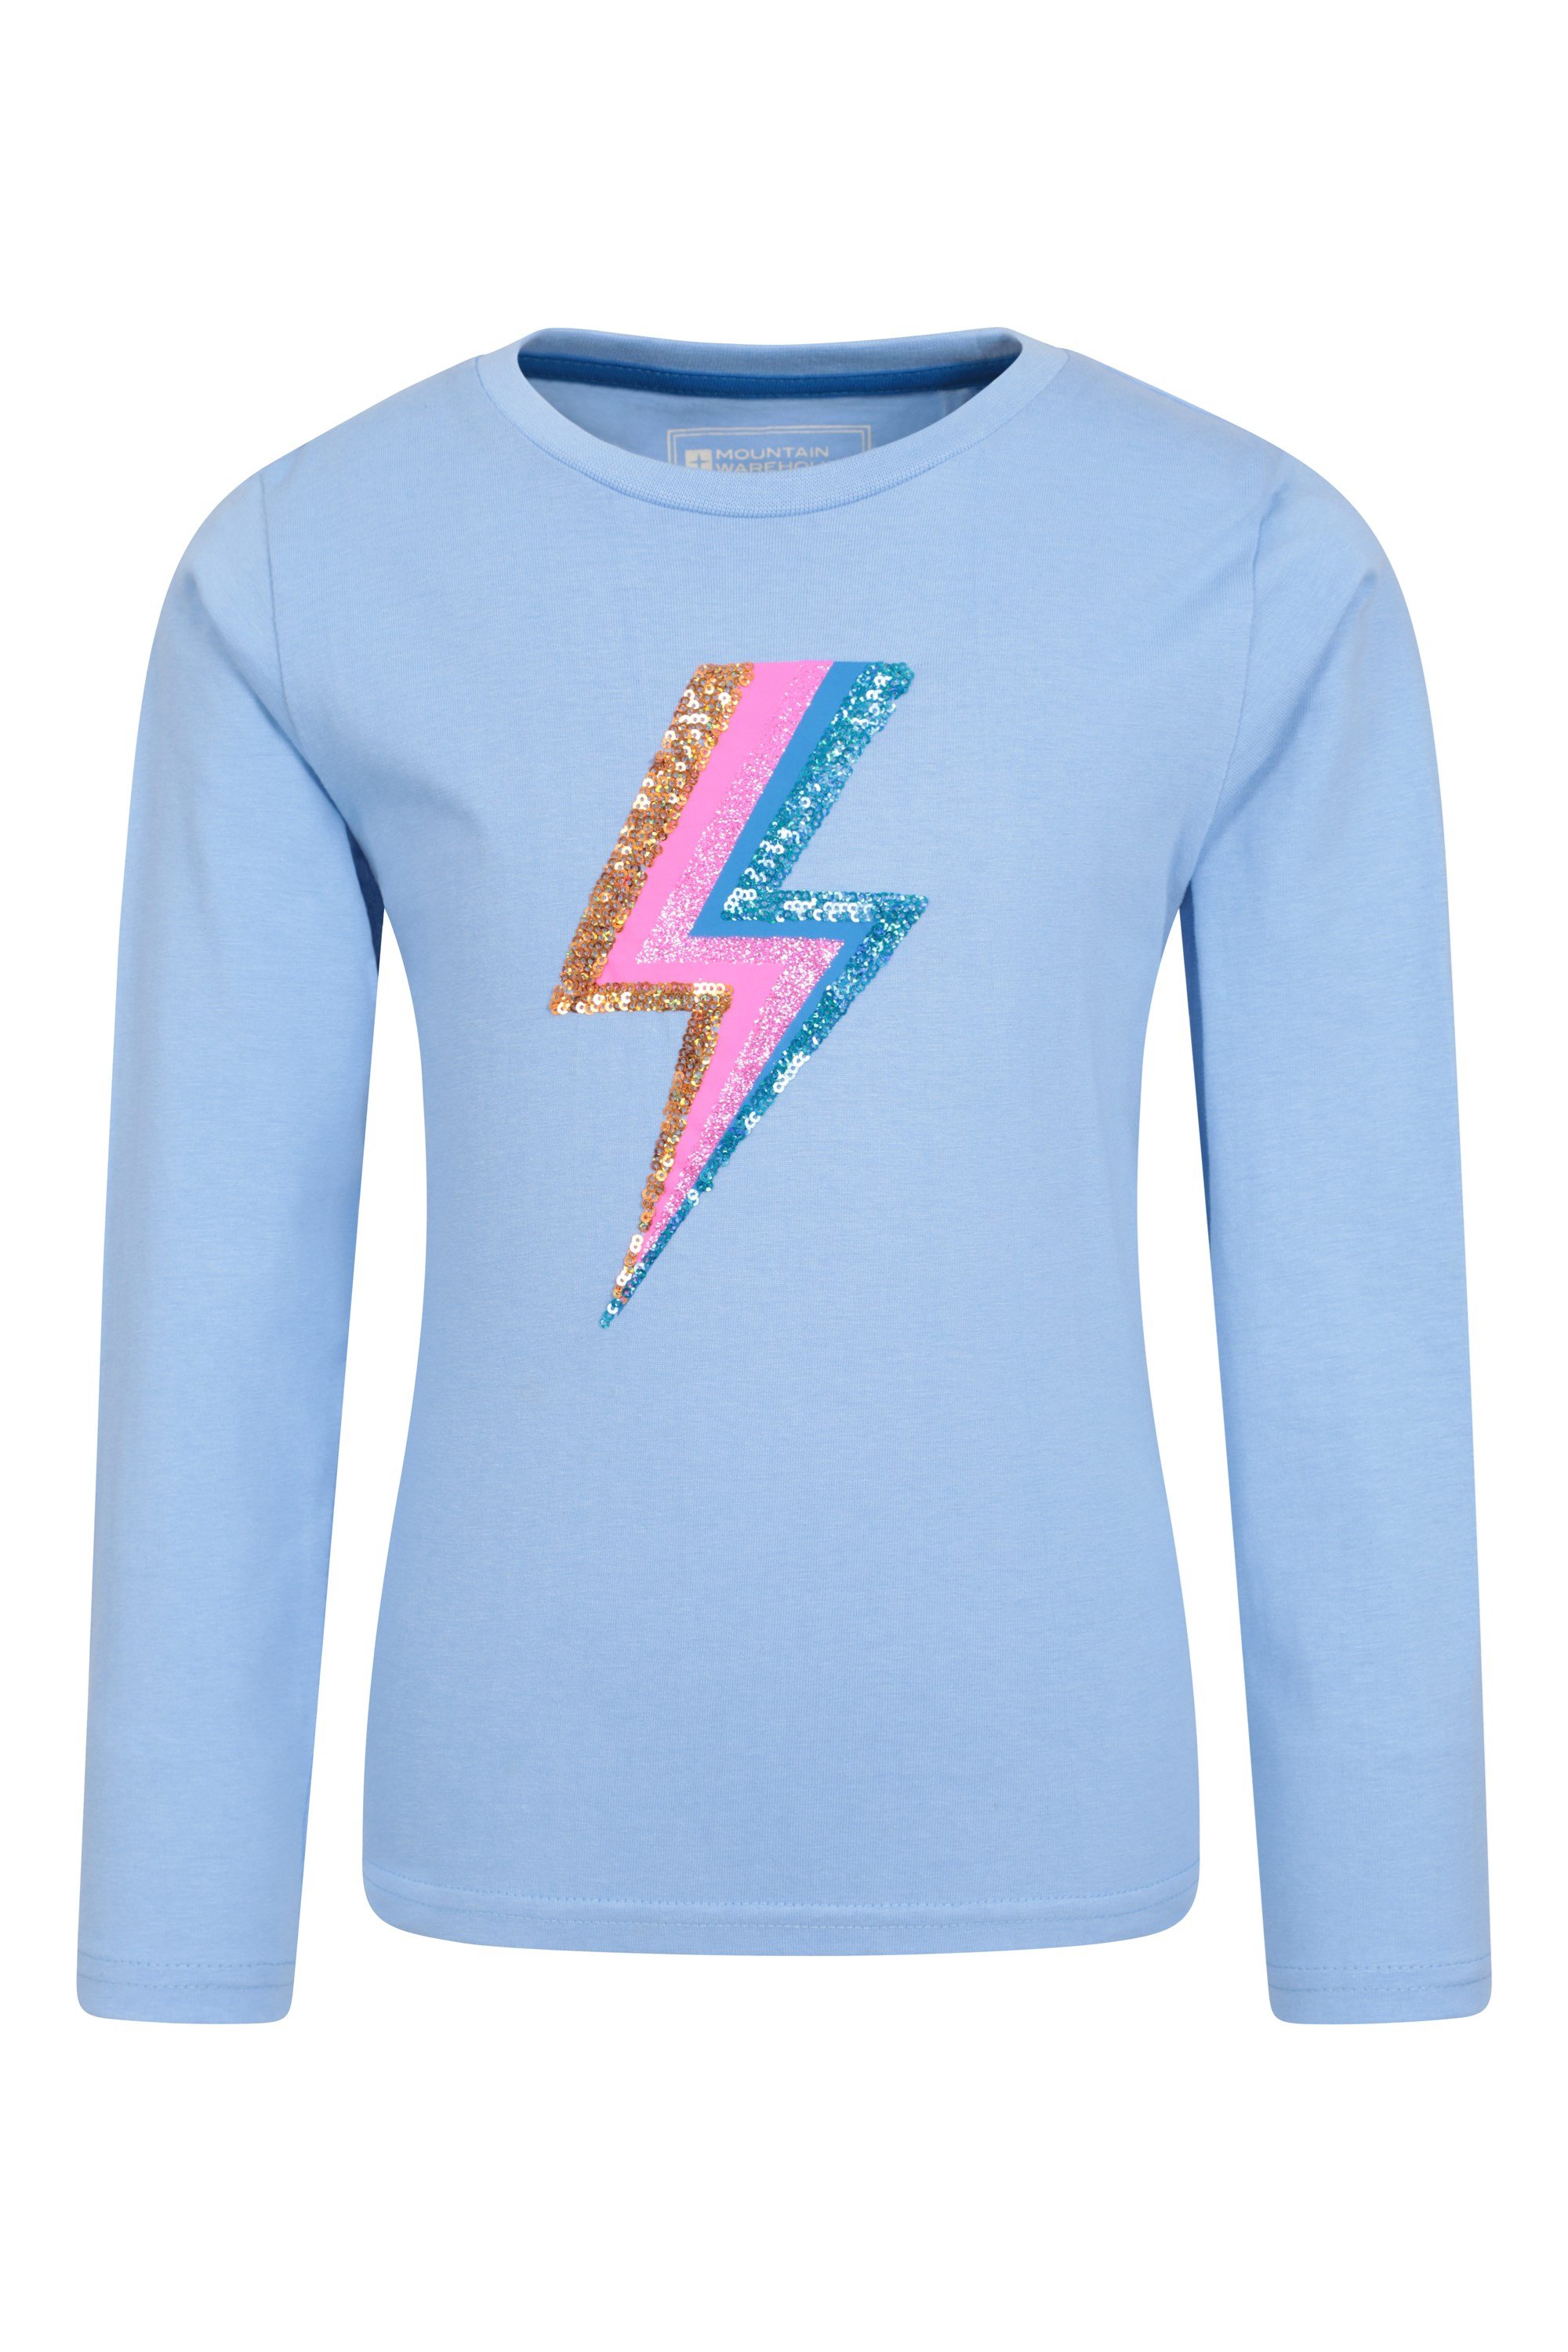 Sequin Lightning Bolt Kids Organic T-shirt - Blue